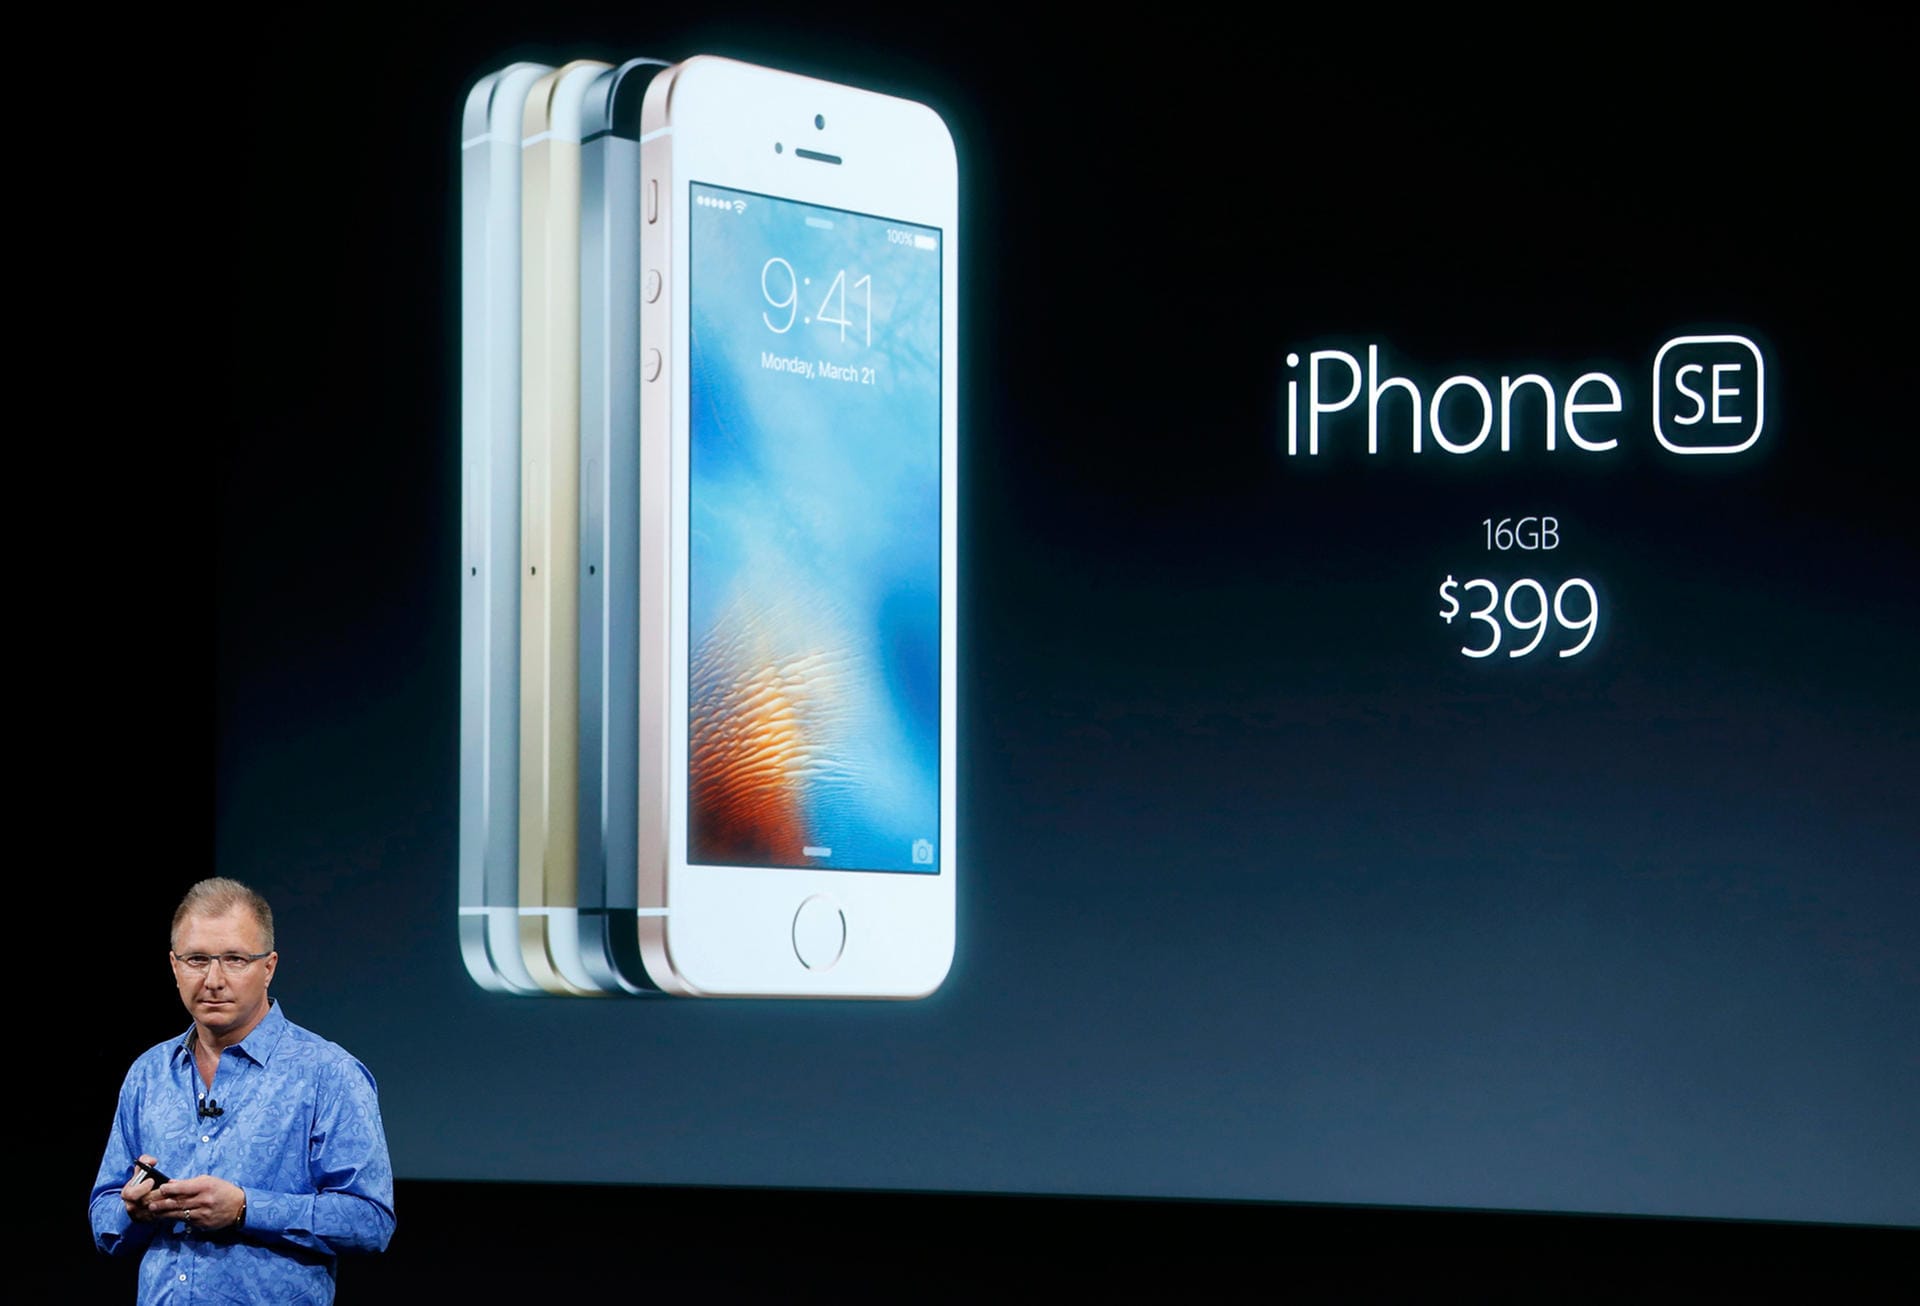 Das iPhone SE ist mit 16 GB Massenspeicher ab 489 US-Dollar zu haben.